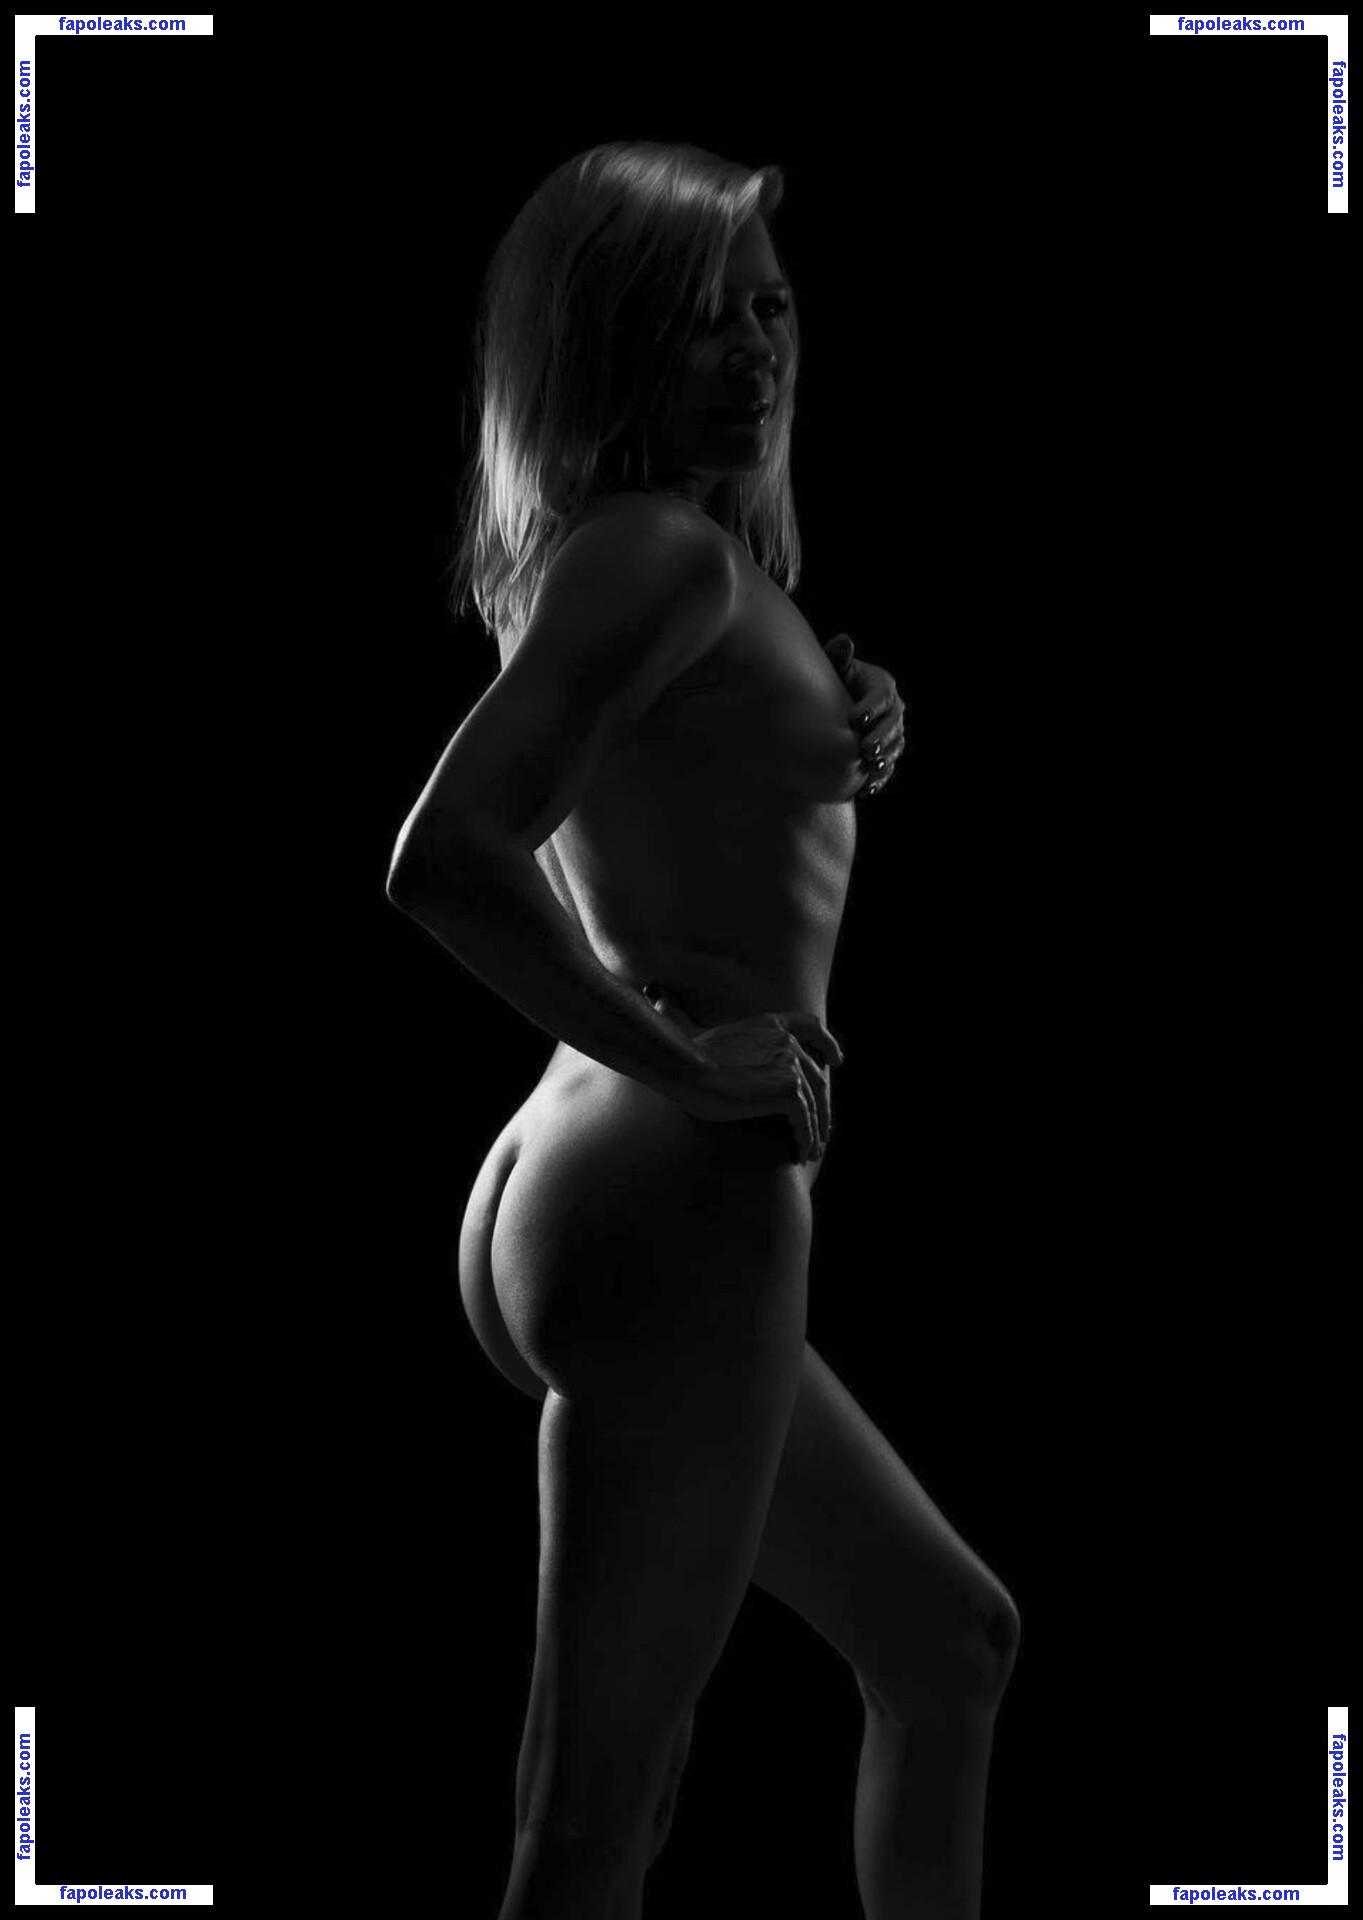 Gigi Edgely / gigiedgley / thegigiedgley nude photo #0004 from OnlyFans